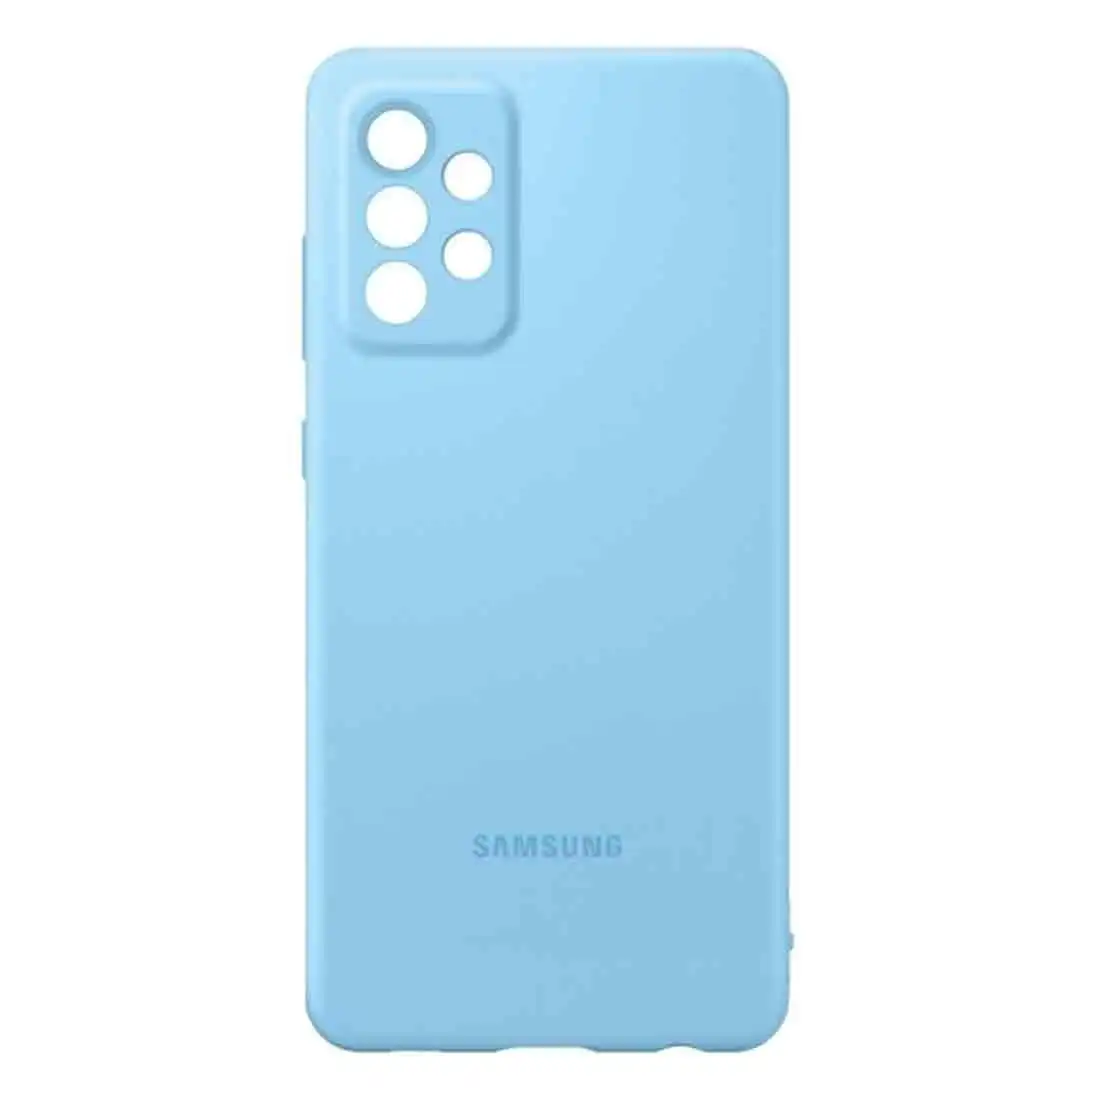 Samsung Galaxy A72 Silicone Cover EF-PA725TLEGWW - Blue